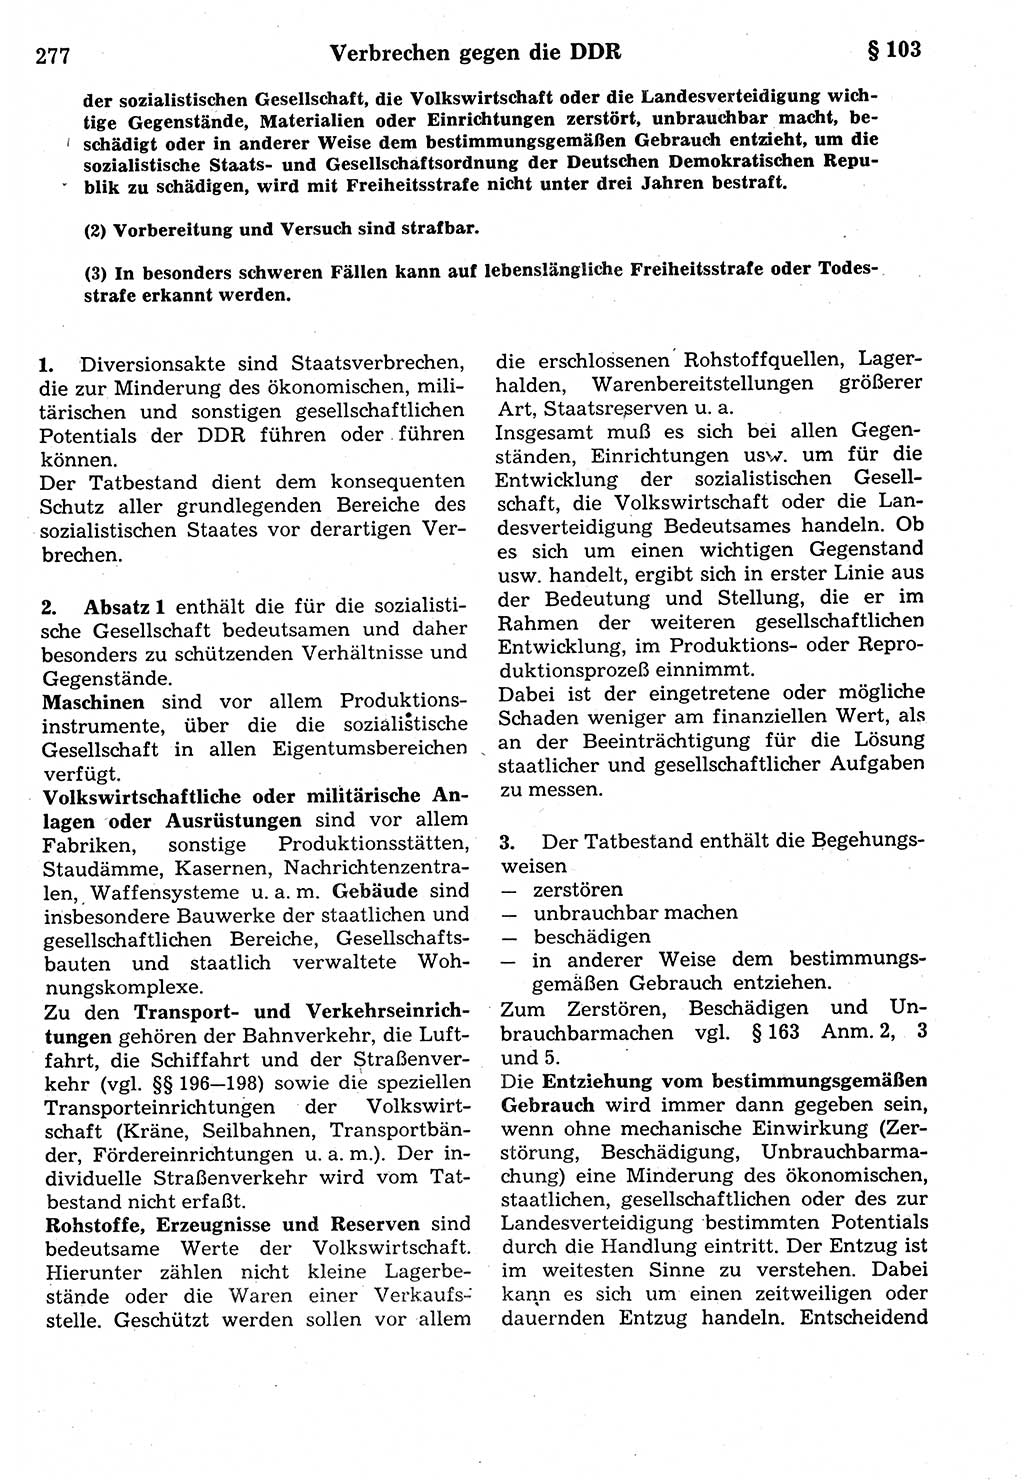 Strafrecht der Deutschen Demokratischen Republik (DDR), Kommentar zum Strafgesetzbuch (StGB) 1987, Seite 277 (Strafr. DDR Komm. StGB 1987, S. 277)